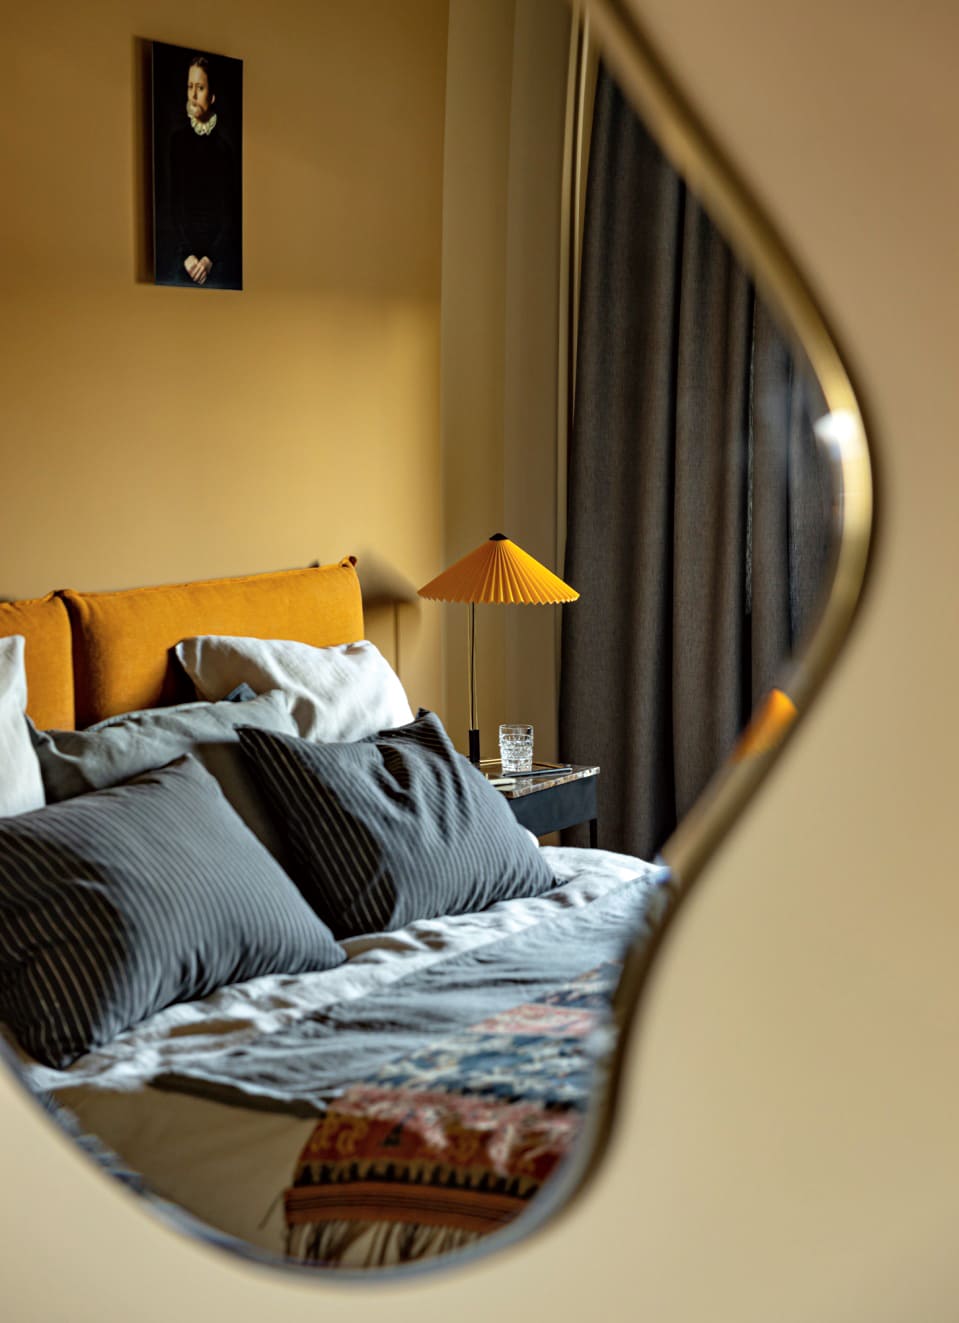 зеркало неровной формы и кровать в серых оттенках